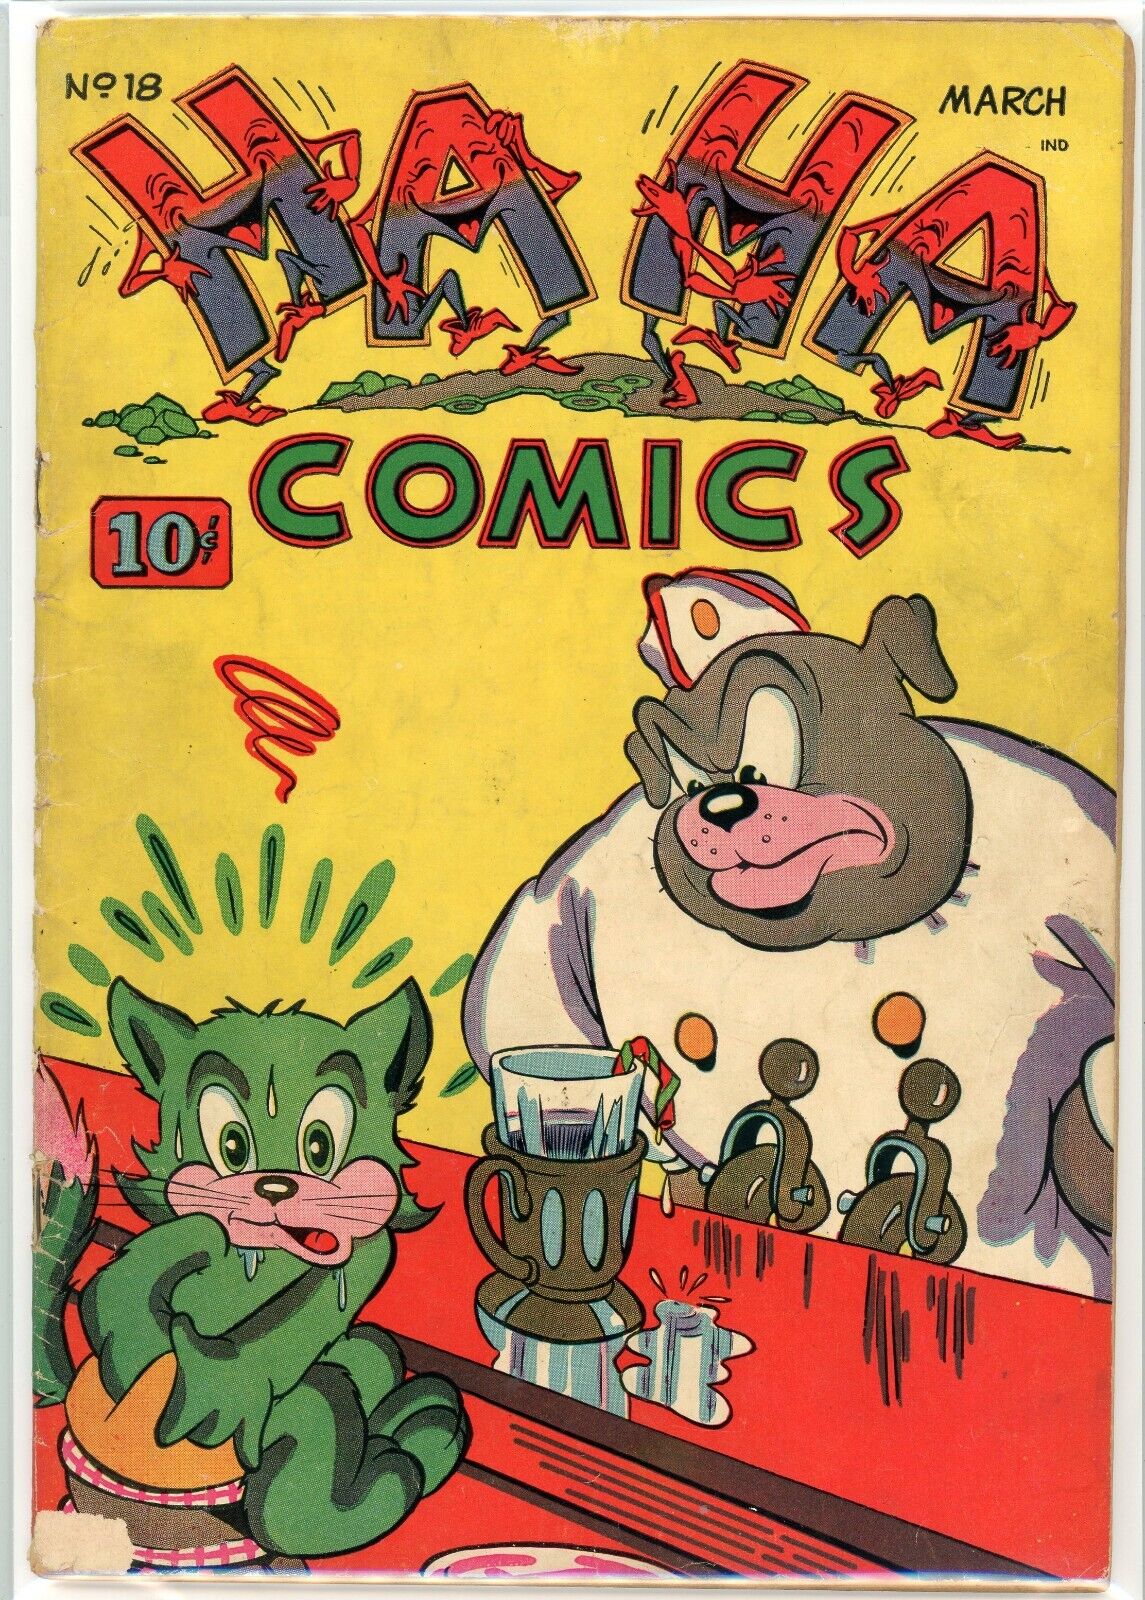 HA HA COMICS #18 AFFORDABLE GRADE SCARCE 1945 GEM HILARIOUS COVER